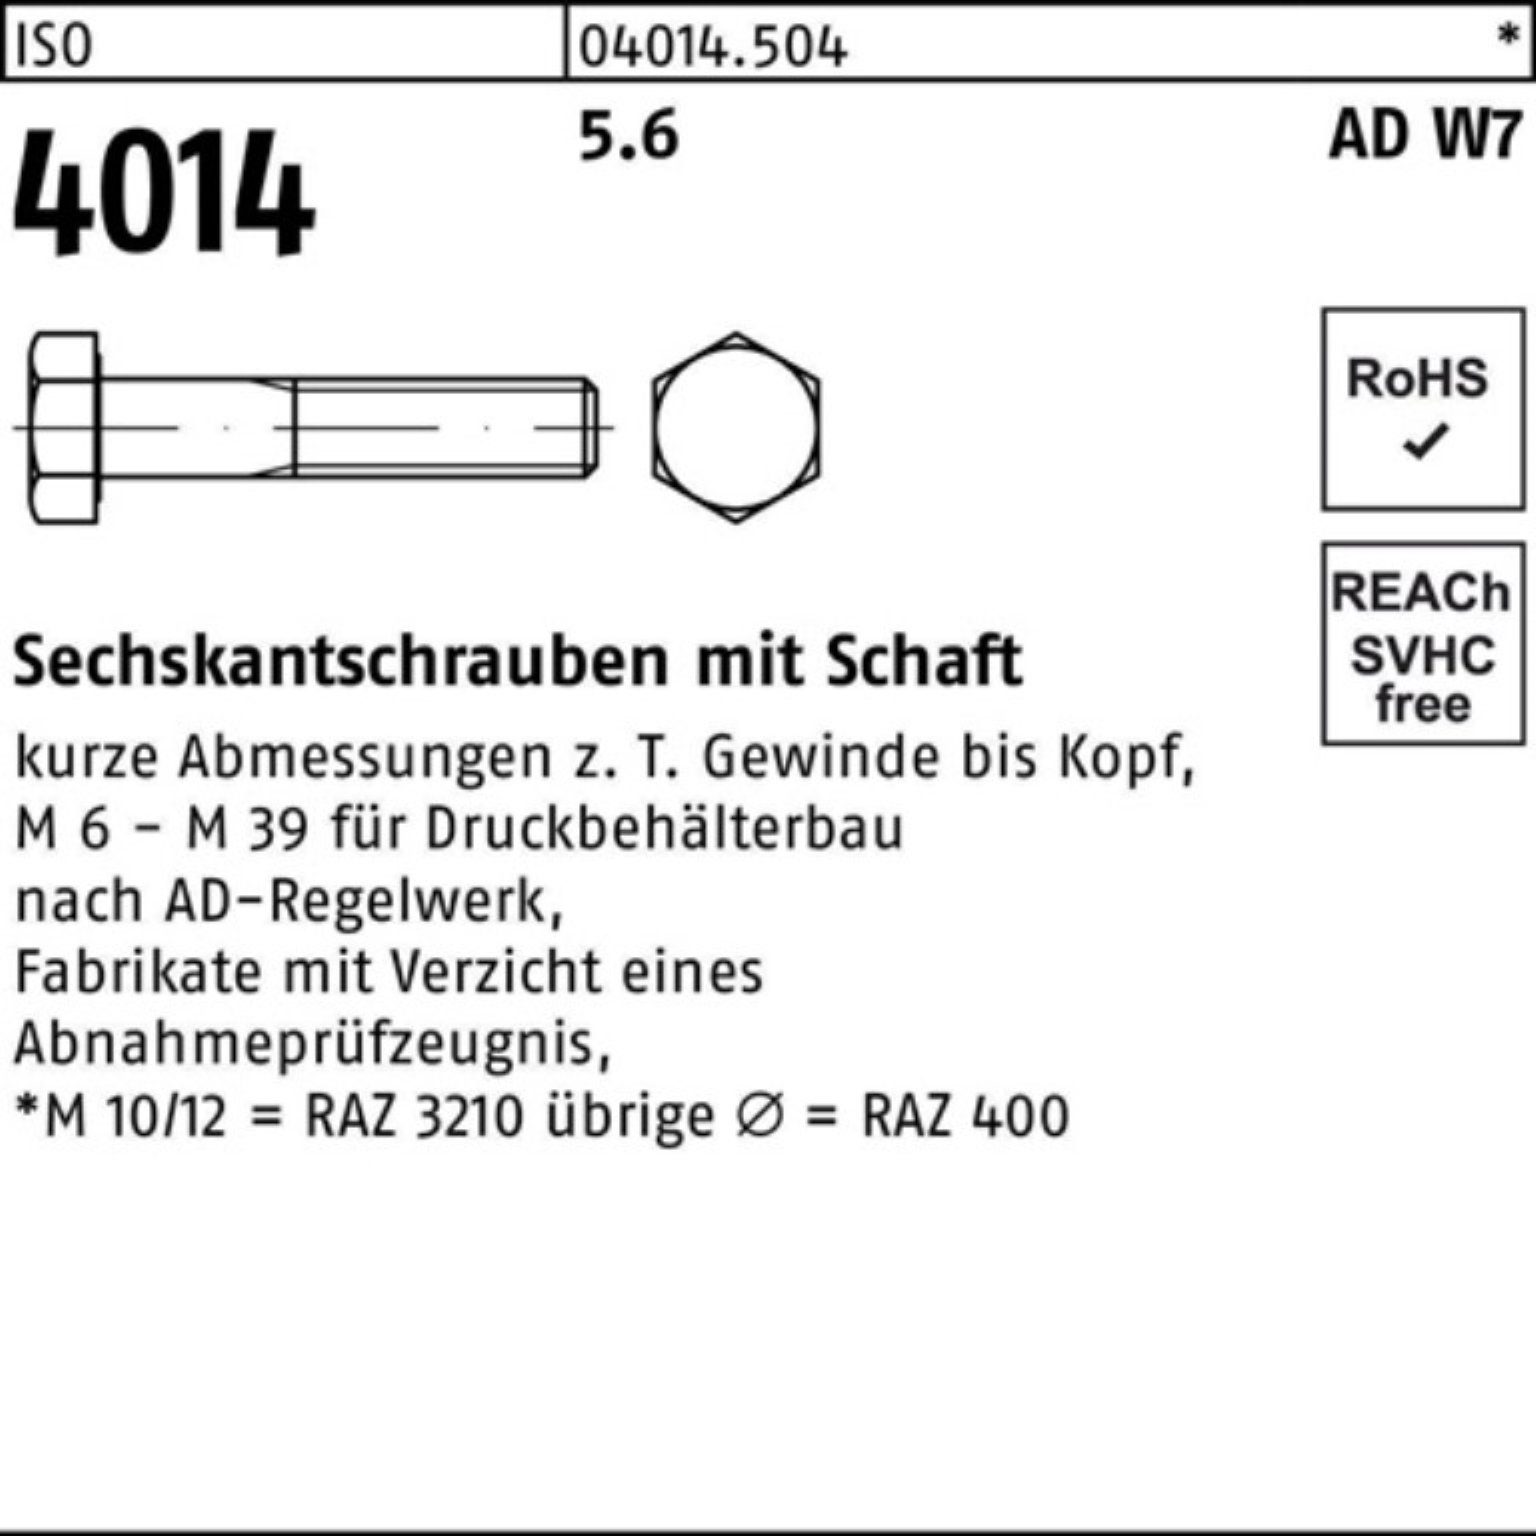 Bufab Sechskantschraube Sechskantschraube ISO Pack 240 W7 100er Stück 4014 1 Schaft M24x 5.6